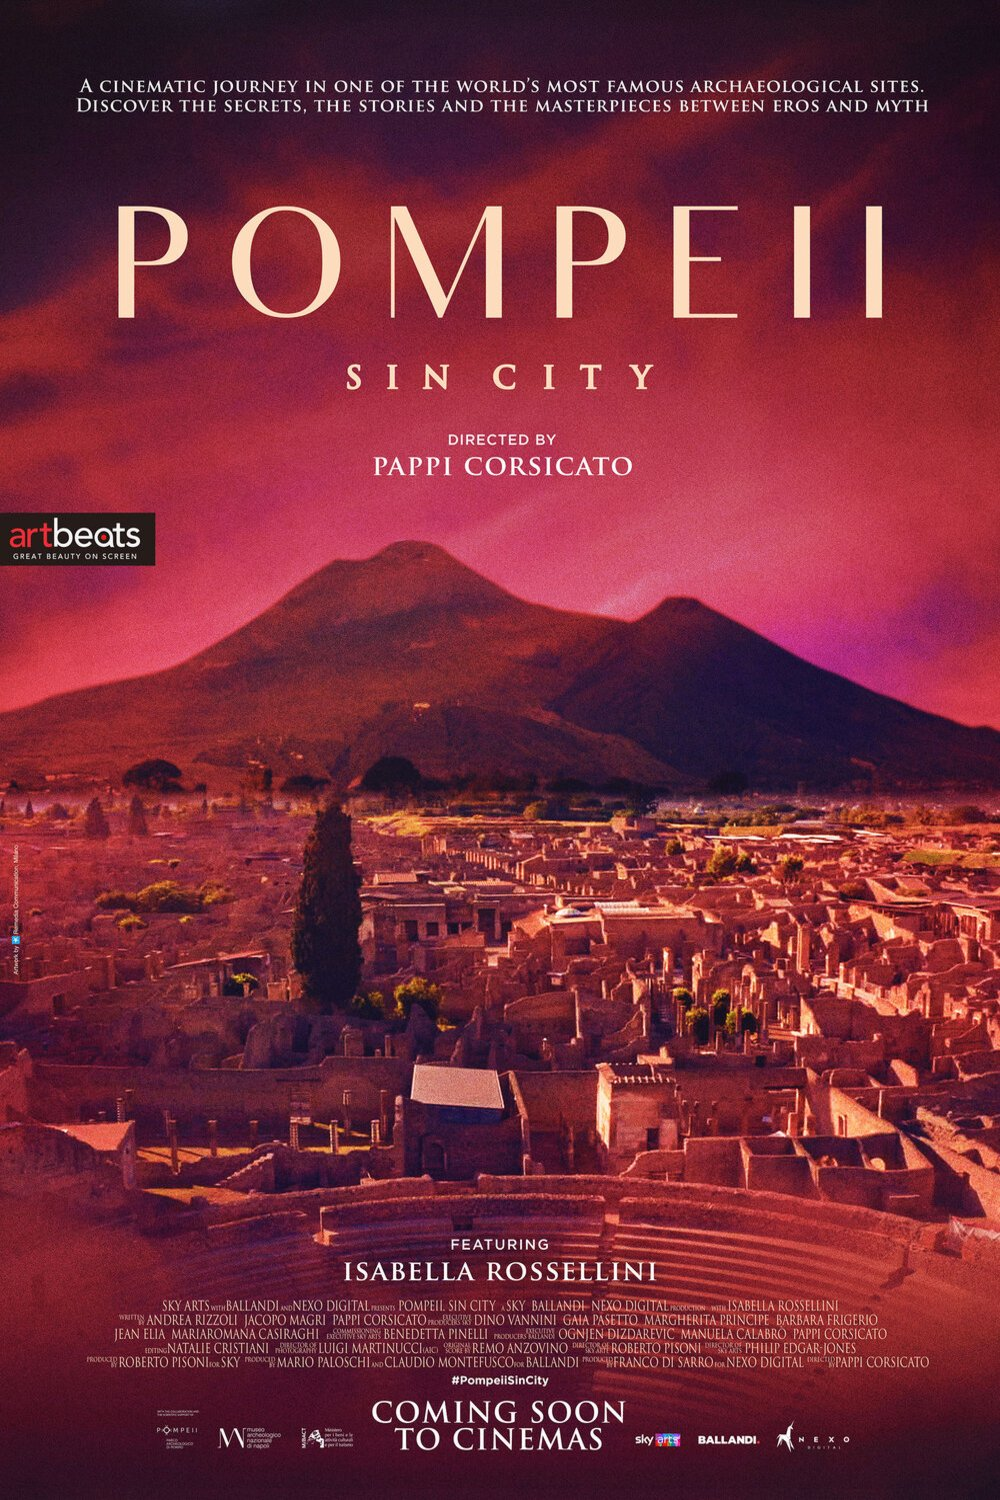 Pompeii Sin City